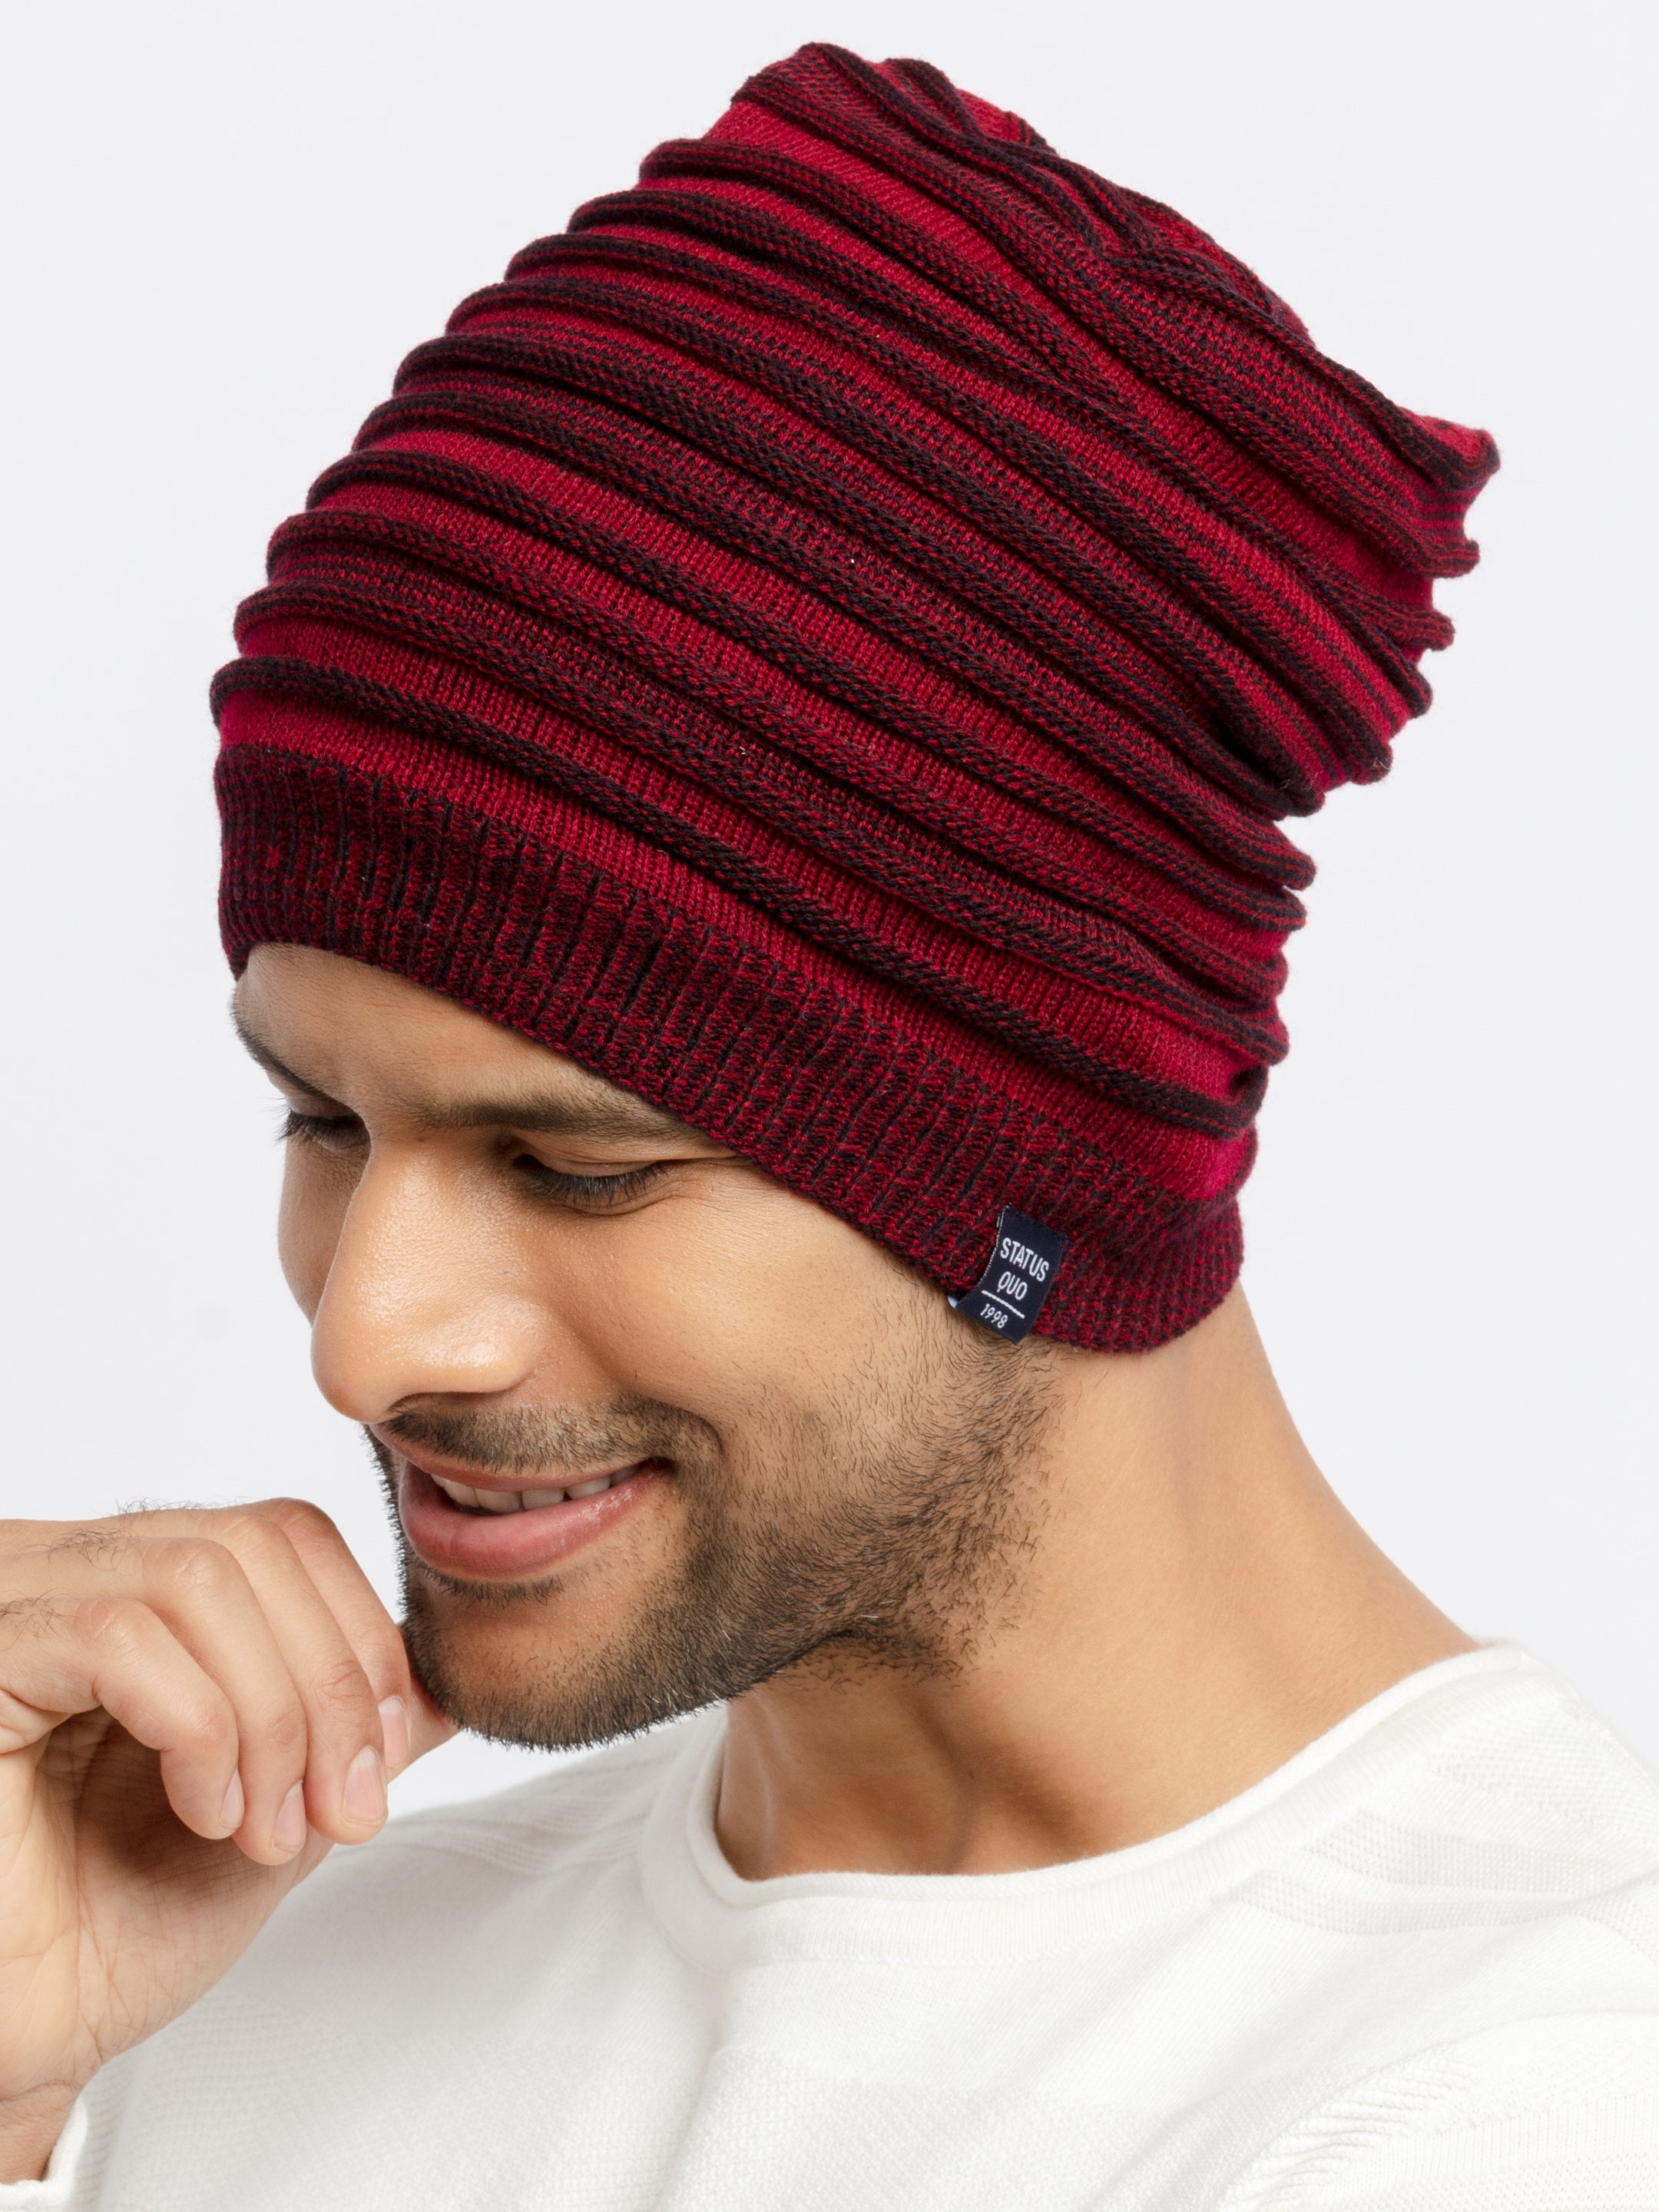 Buy Knitted Winter Caps For Men Online